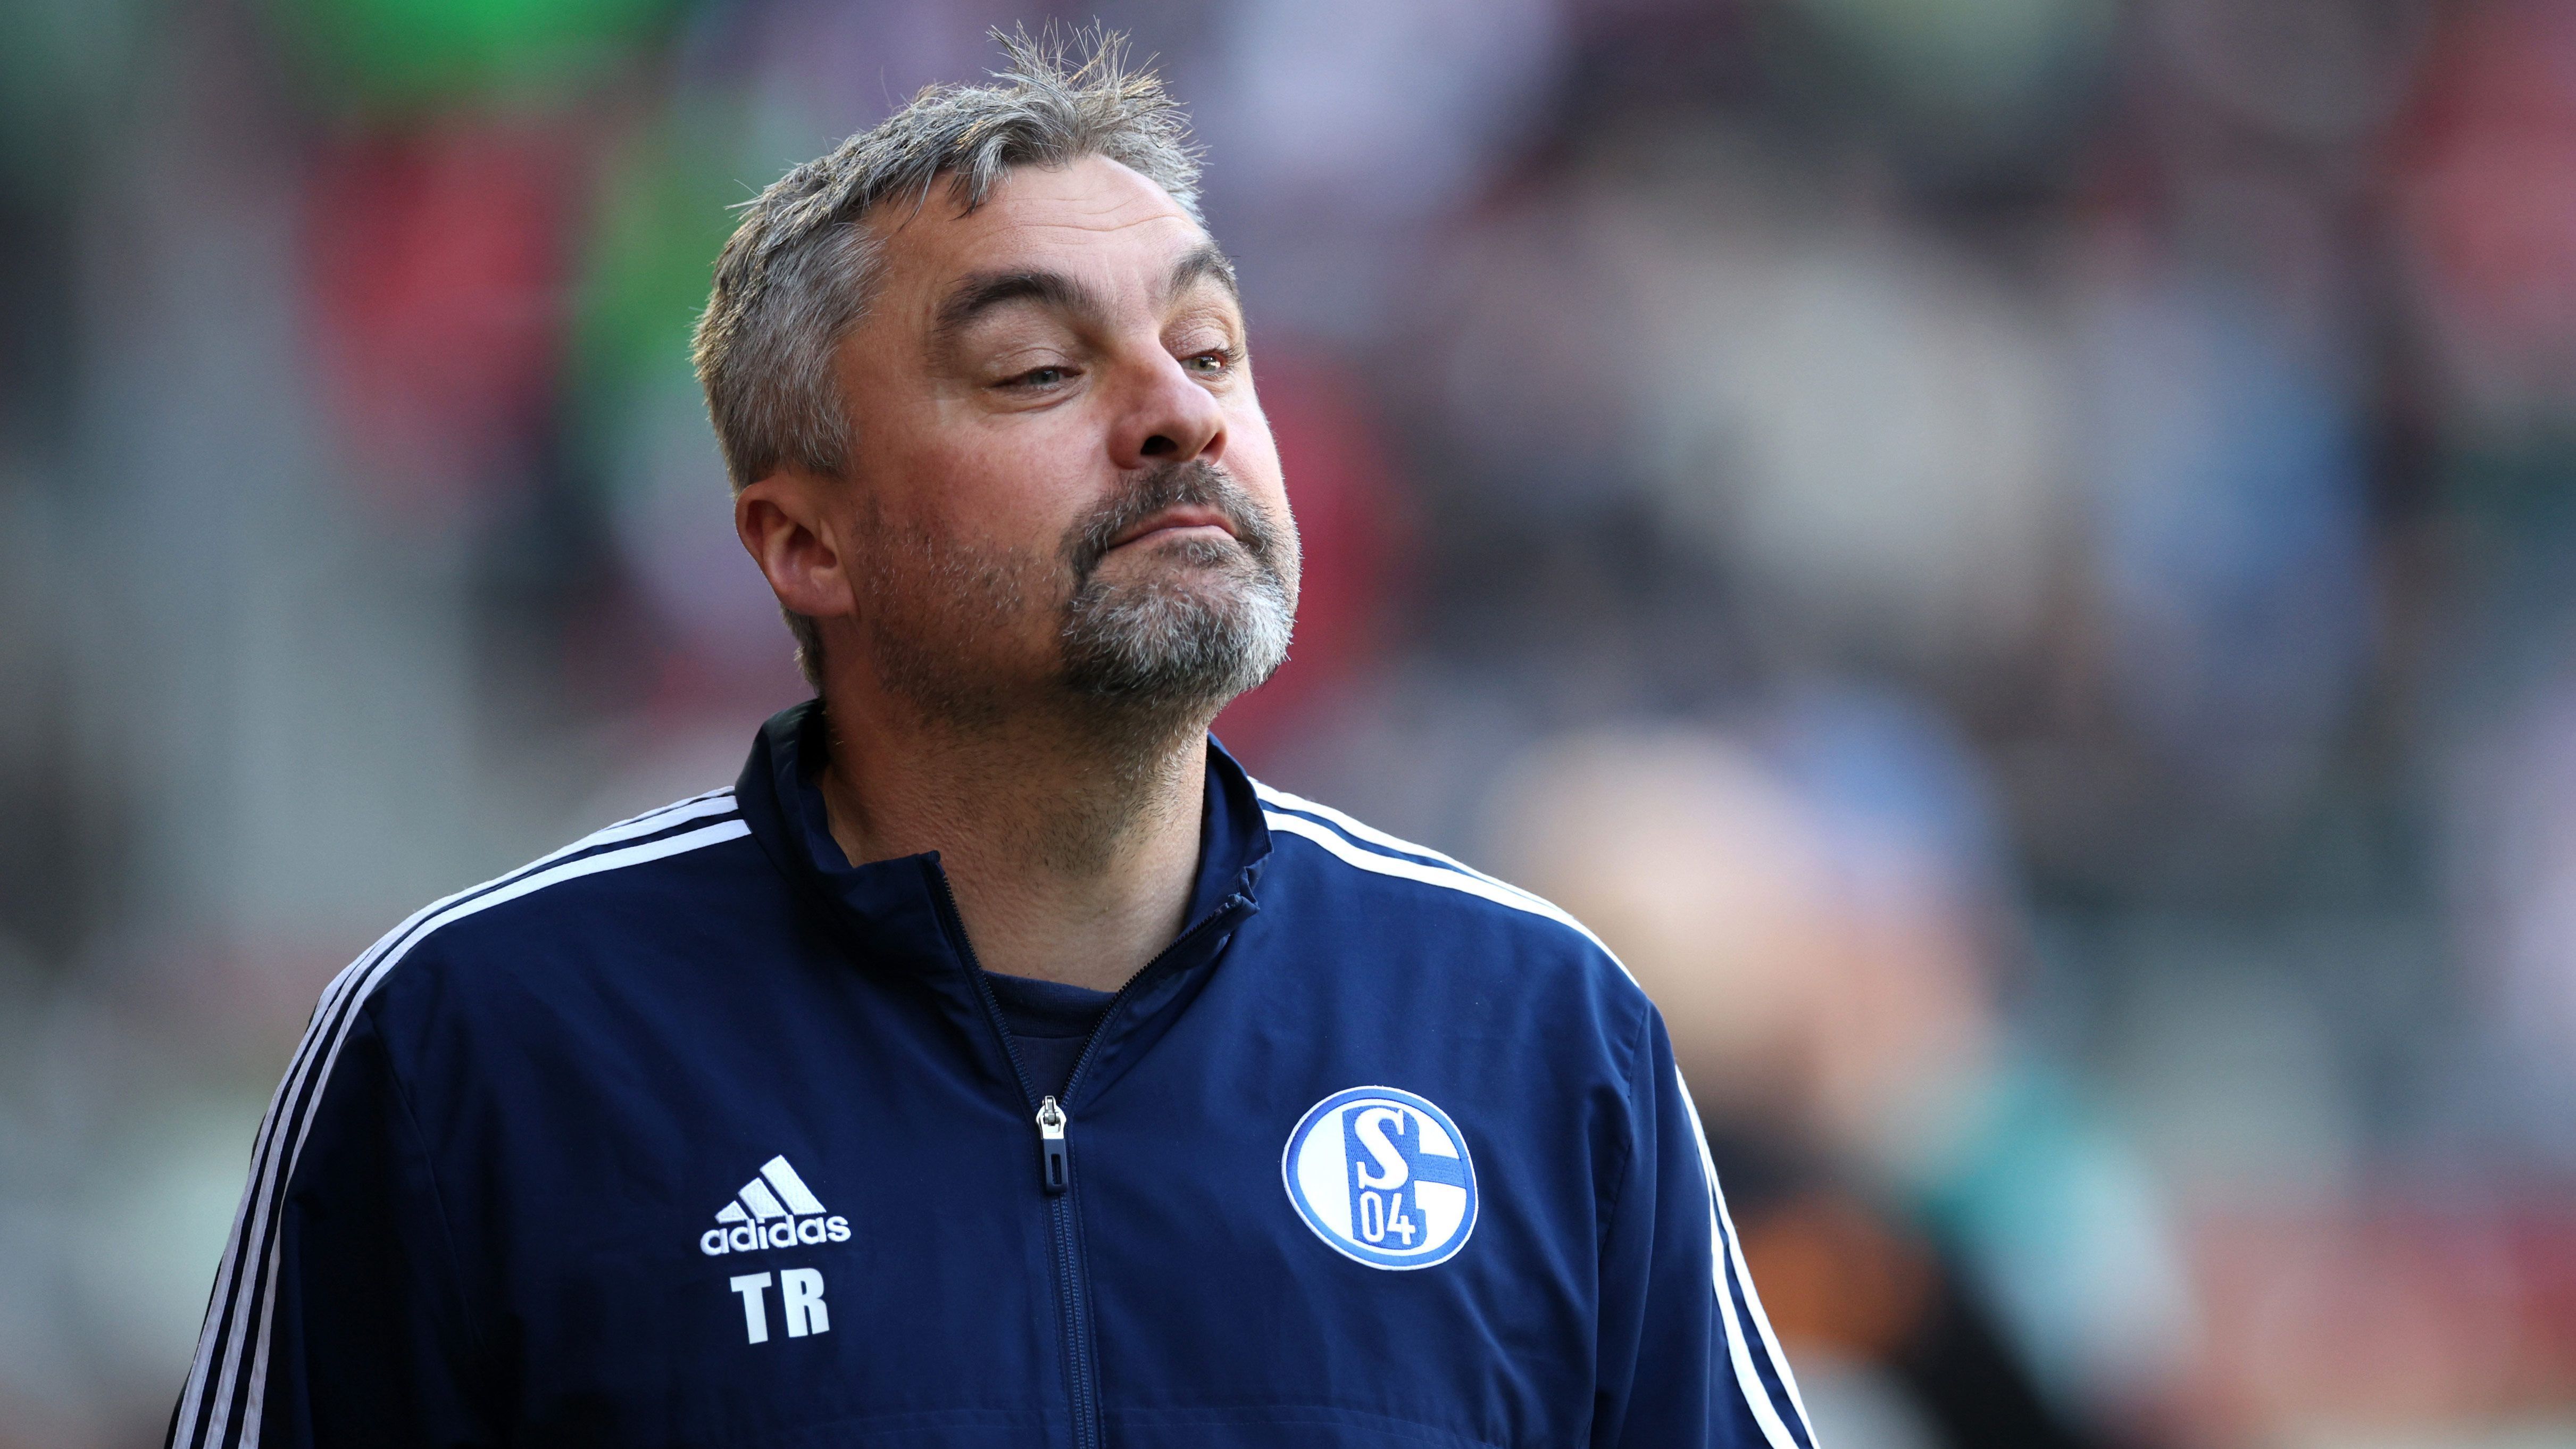 
                <strong>FC Schalke 04: Einstellung von Thomas Reis</strong><br>
                Ein Spiel betreute Mathias Kreutzer die Schalker (1:2 bei Hertha BSC) ehe der ehemalige Bochumer Thomas Reis den Klub übernahm. In den ersten sechs Reis-Spielen holte S04 lediglich einen Punkt, anschließend folgte die einzigartige Serie von vier 0:0 in Serie. Doch auch die vier Spiele darauf blieb Schalke ungeschlagen und holte darunter zwei Siege. Nach acht Spielen ohne Nuller gab es zuletzt die 0:3-Niederlage gegen Leverkusen. Doch man sieht: Reis hat Schalke stabilisiert.
              